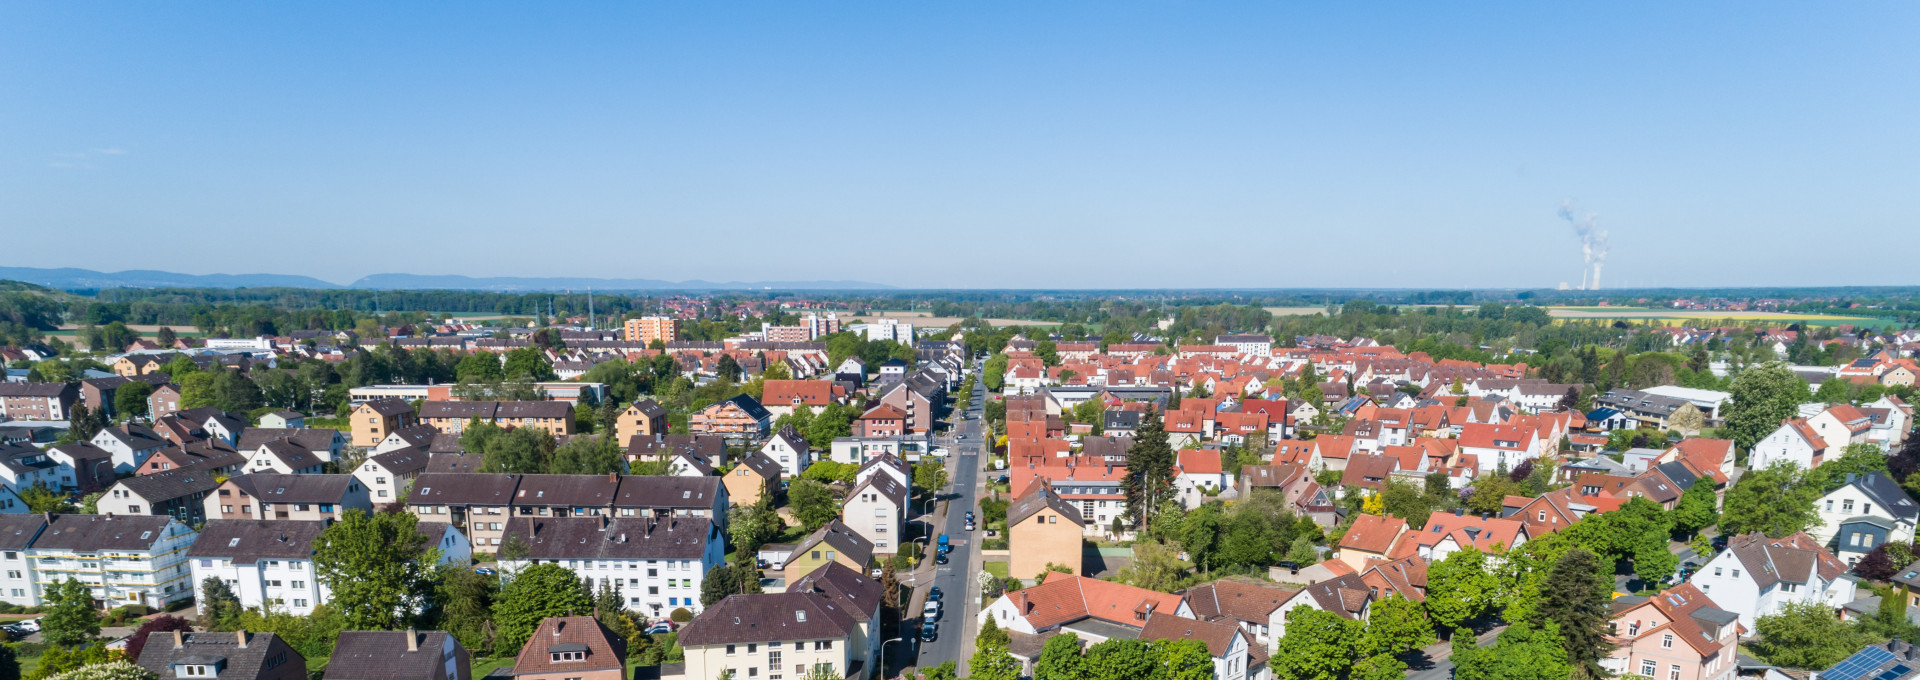 Luftaufnahme von einem Wohngebiet einer Kleinstadt